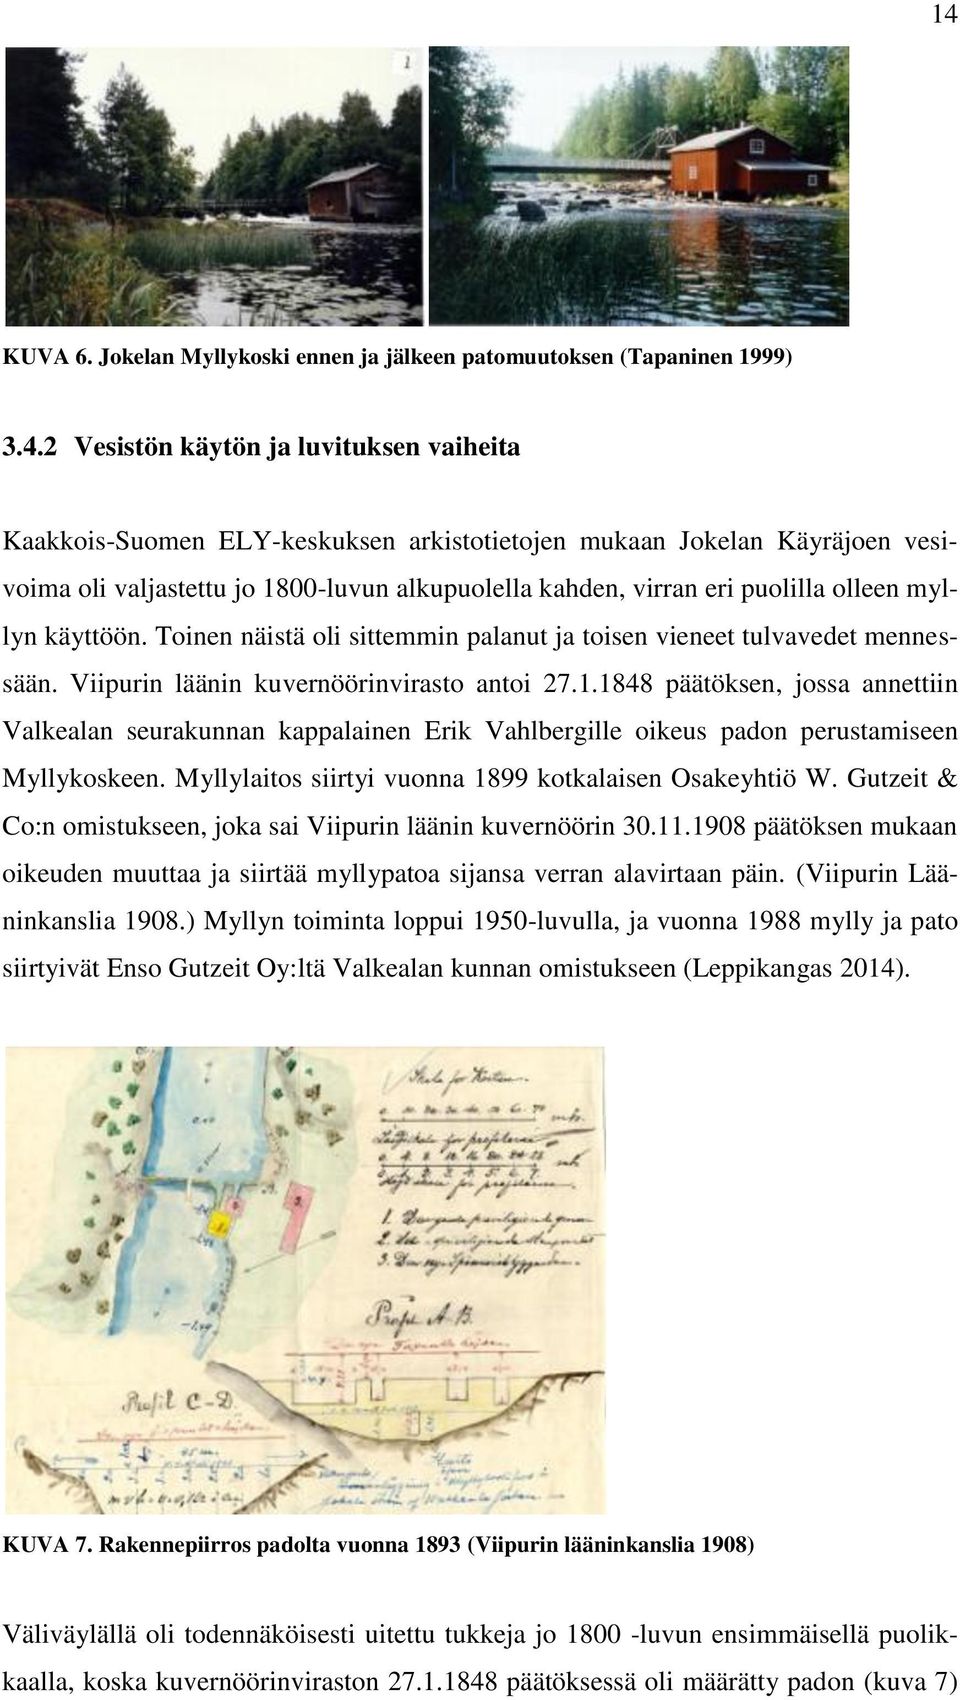 Viipurin läänin kuvernöörinvirasto antoi 27.1.1848 päätöksen, jossa annettiin Valkealan seurakunnan kappalainen Erik Vahlbergille oikeus padon perustamiseen Myllykoskeen.